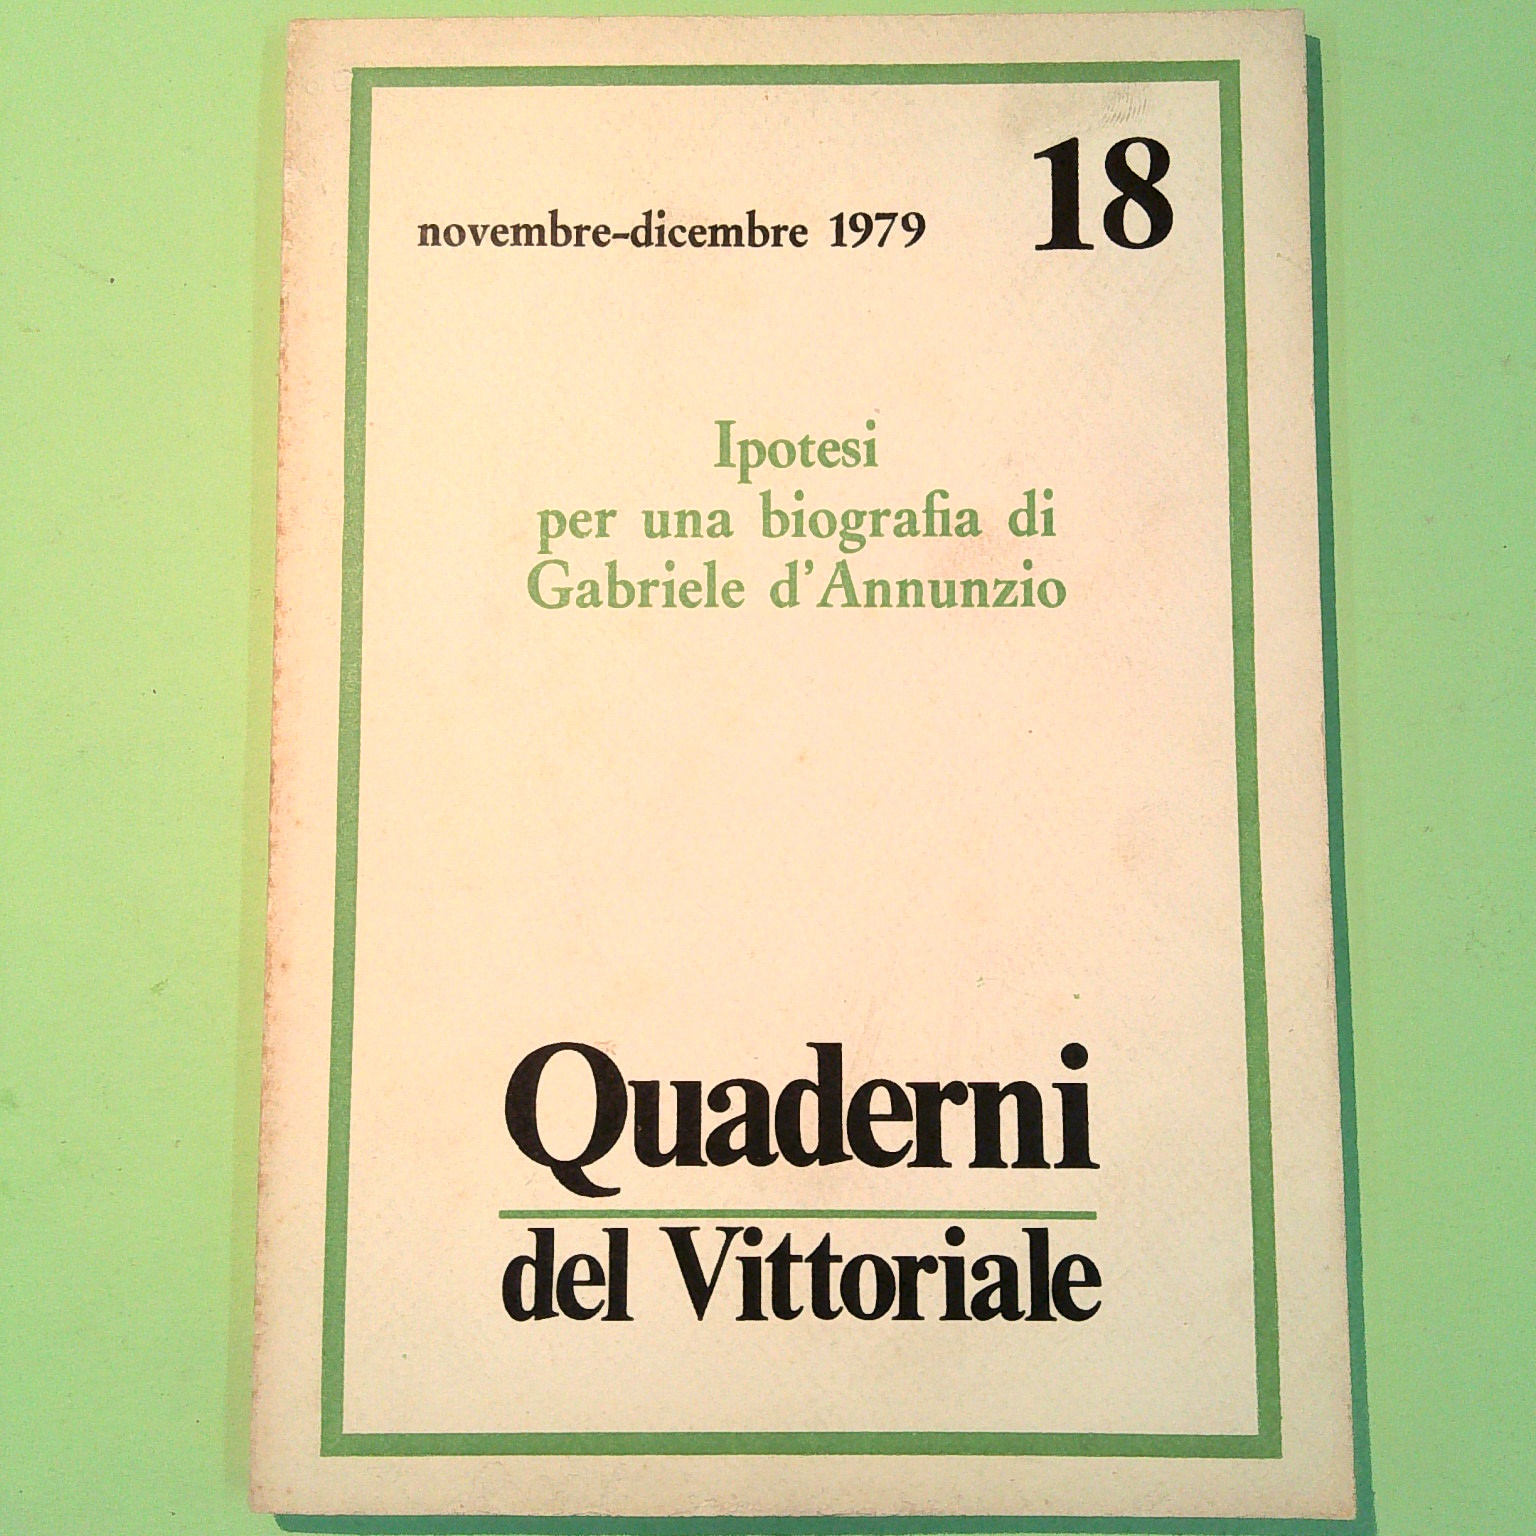 IPOTESI PER UNA BIOGRAFIA DI GABRIELE D'ANNUNZIO QUADERNI DEL VITTORIALE 18 1979